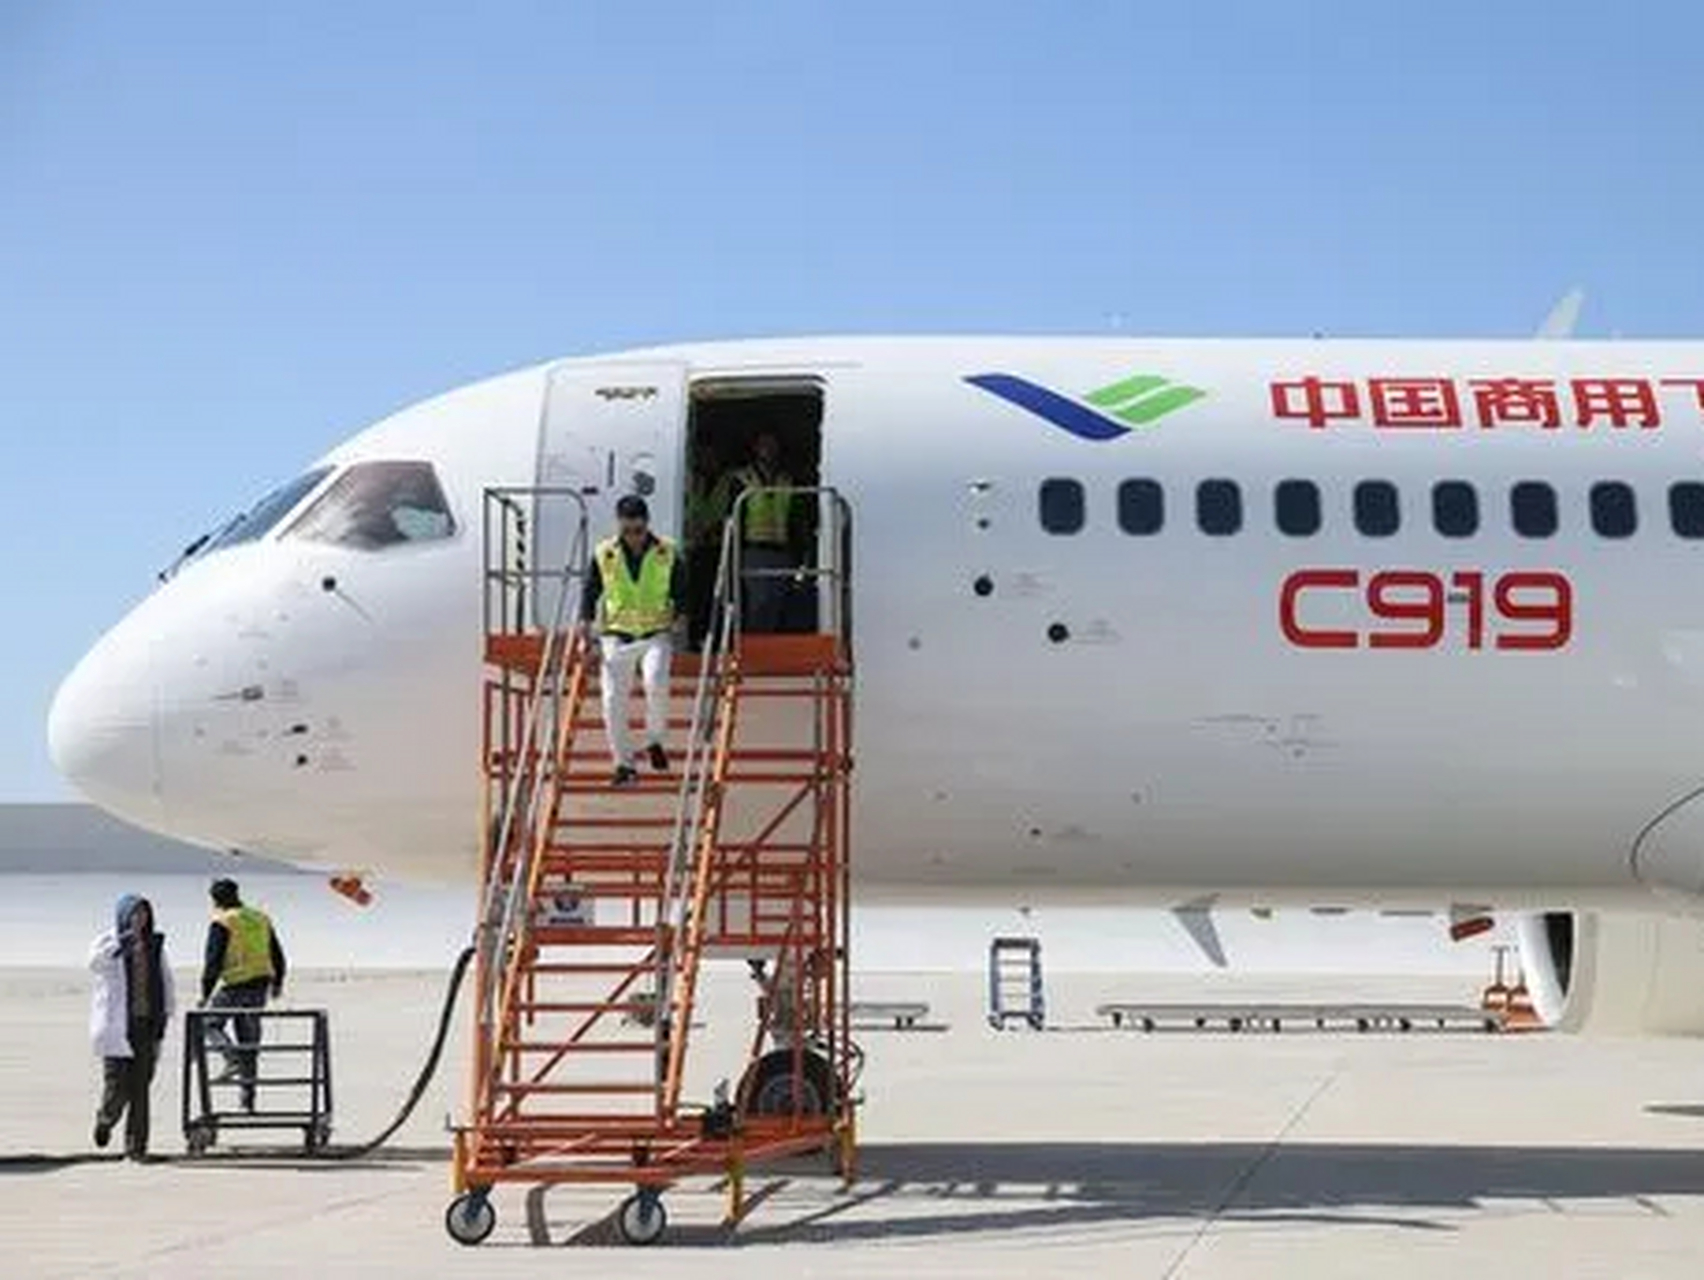 中国东航最近接收了第二架国产c919大型客机,这证明了该飞机的可靠性